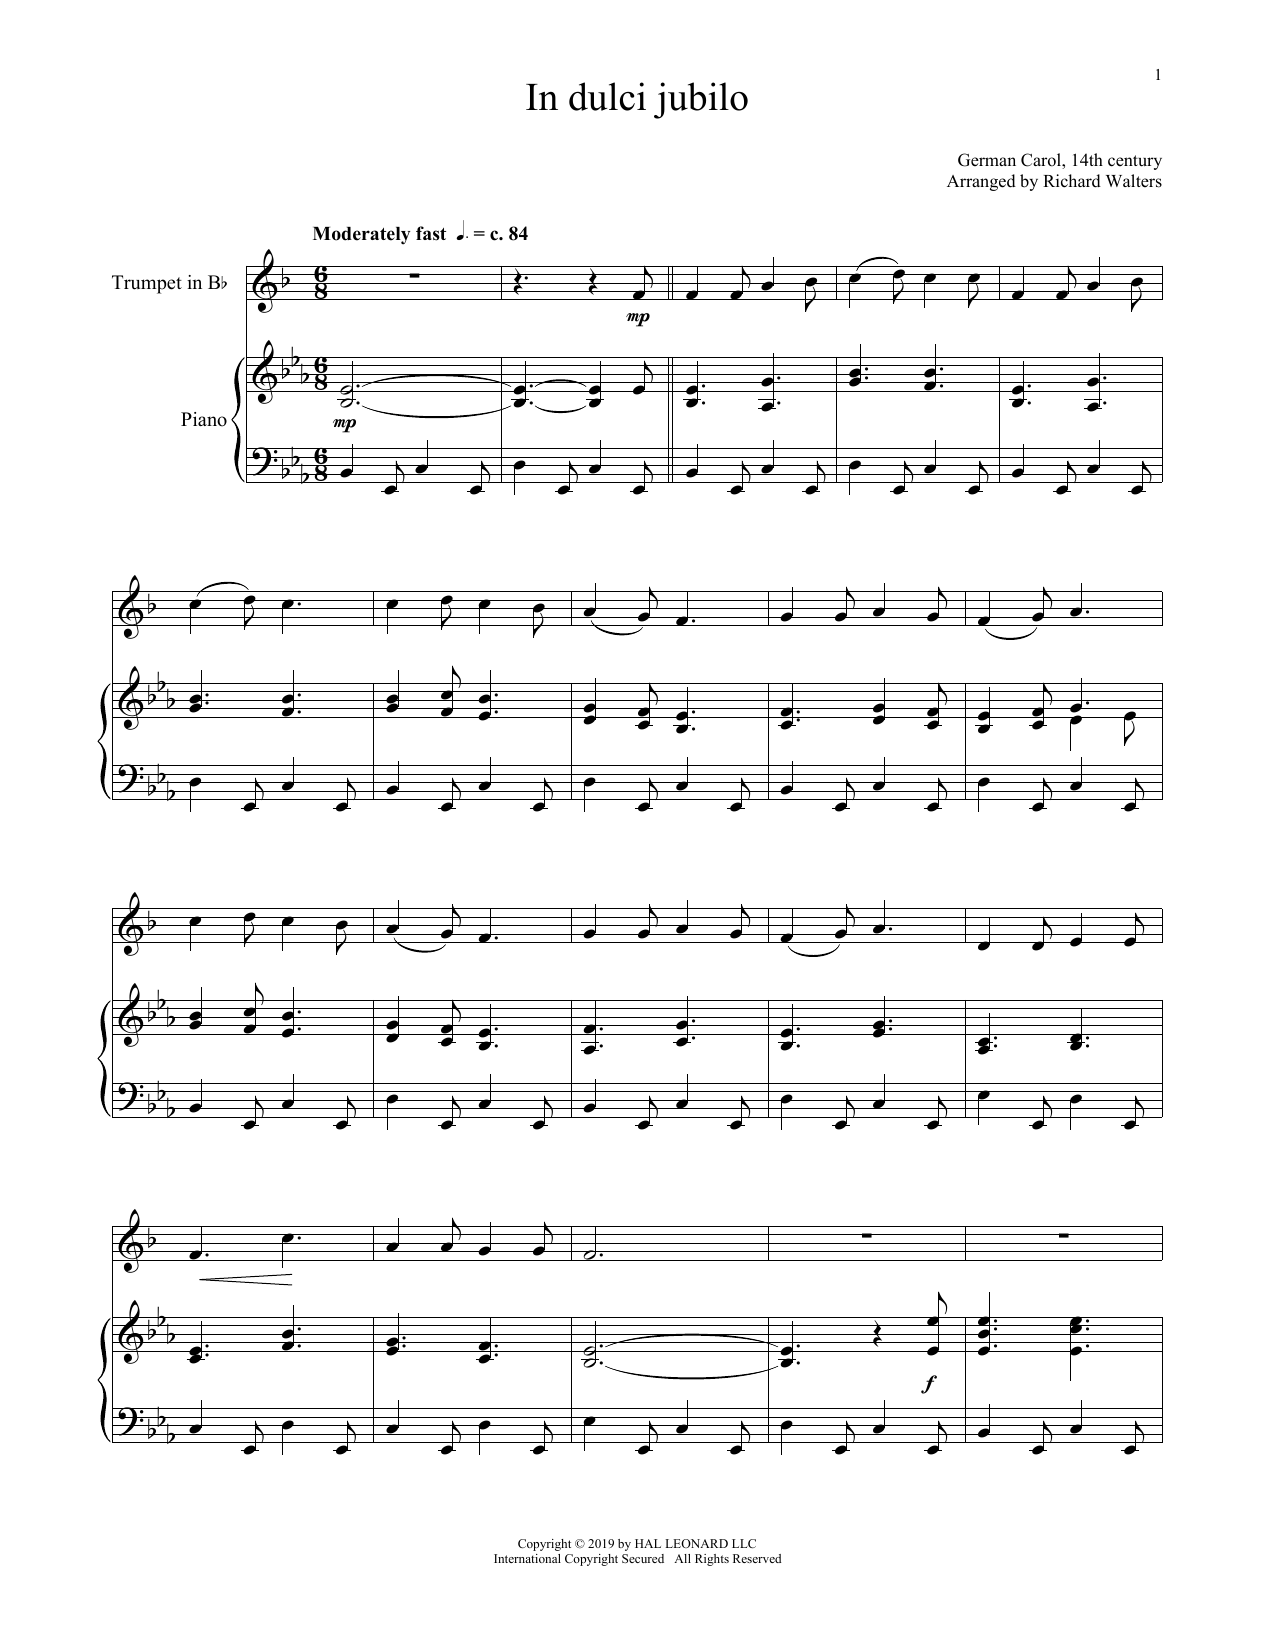 Christmas Carol In Dulci Jubilo Sheet Music Notes & Chords for Lyrics & Chords - Download or Print PDF